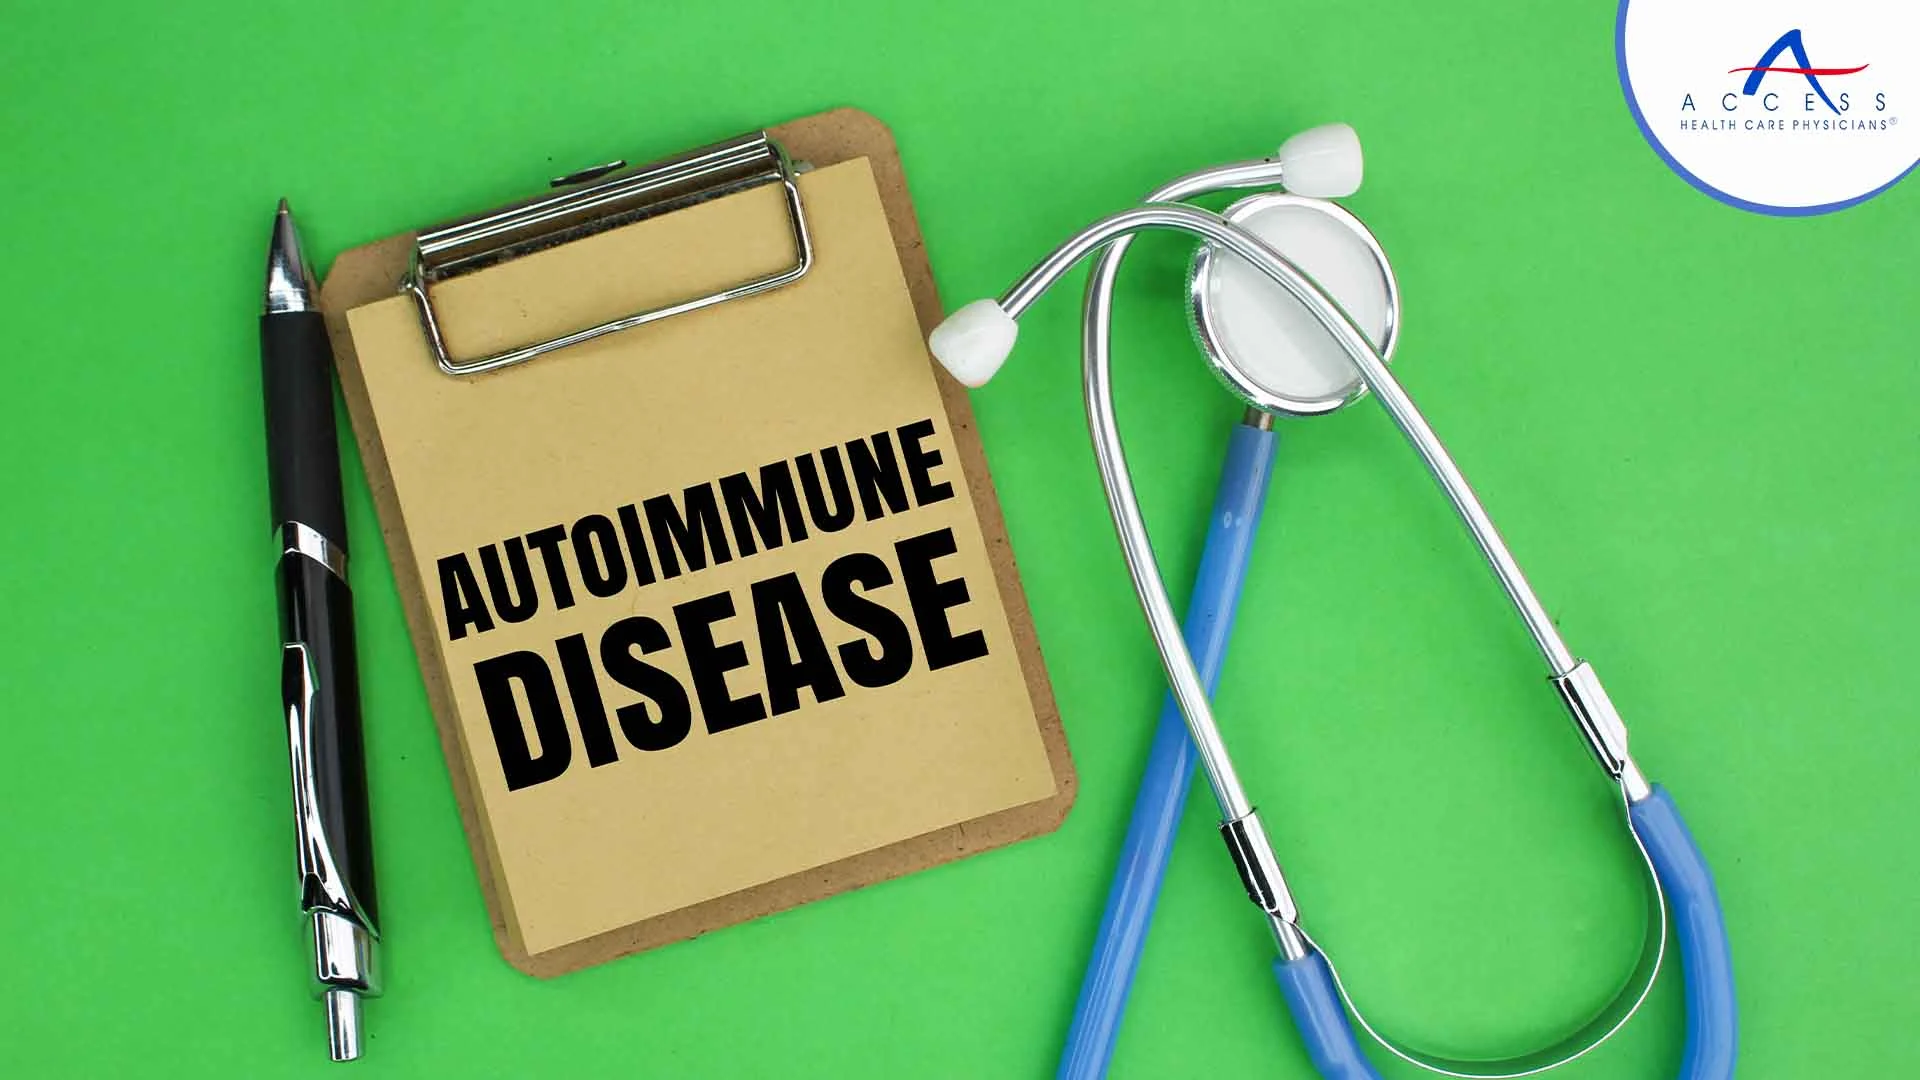 autoimmune-diseases